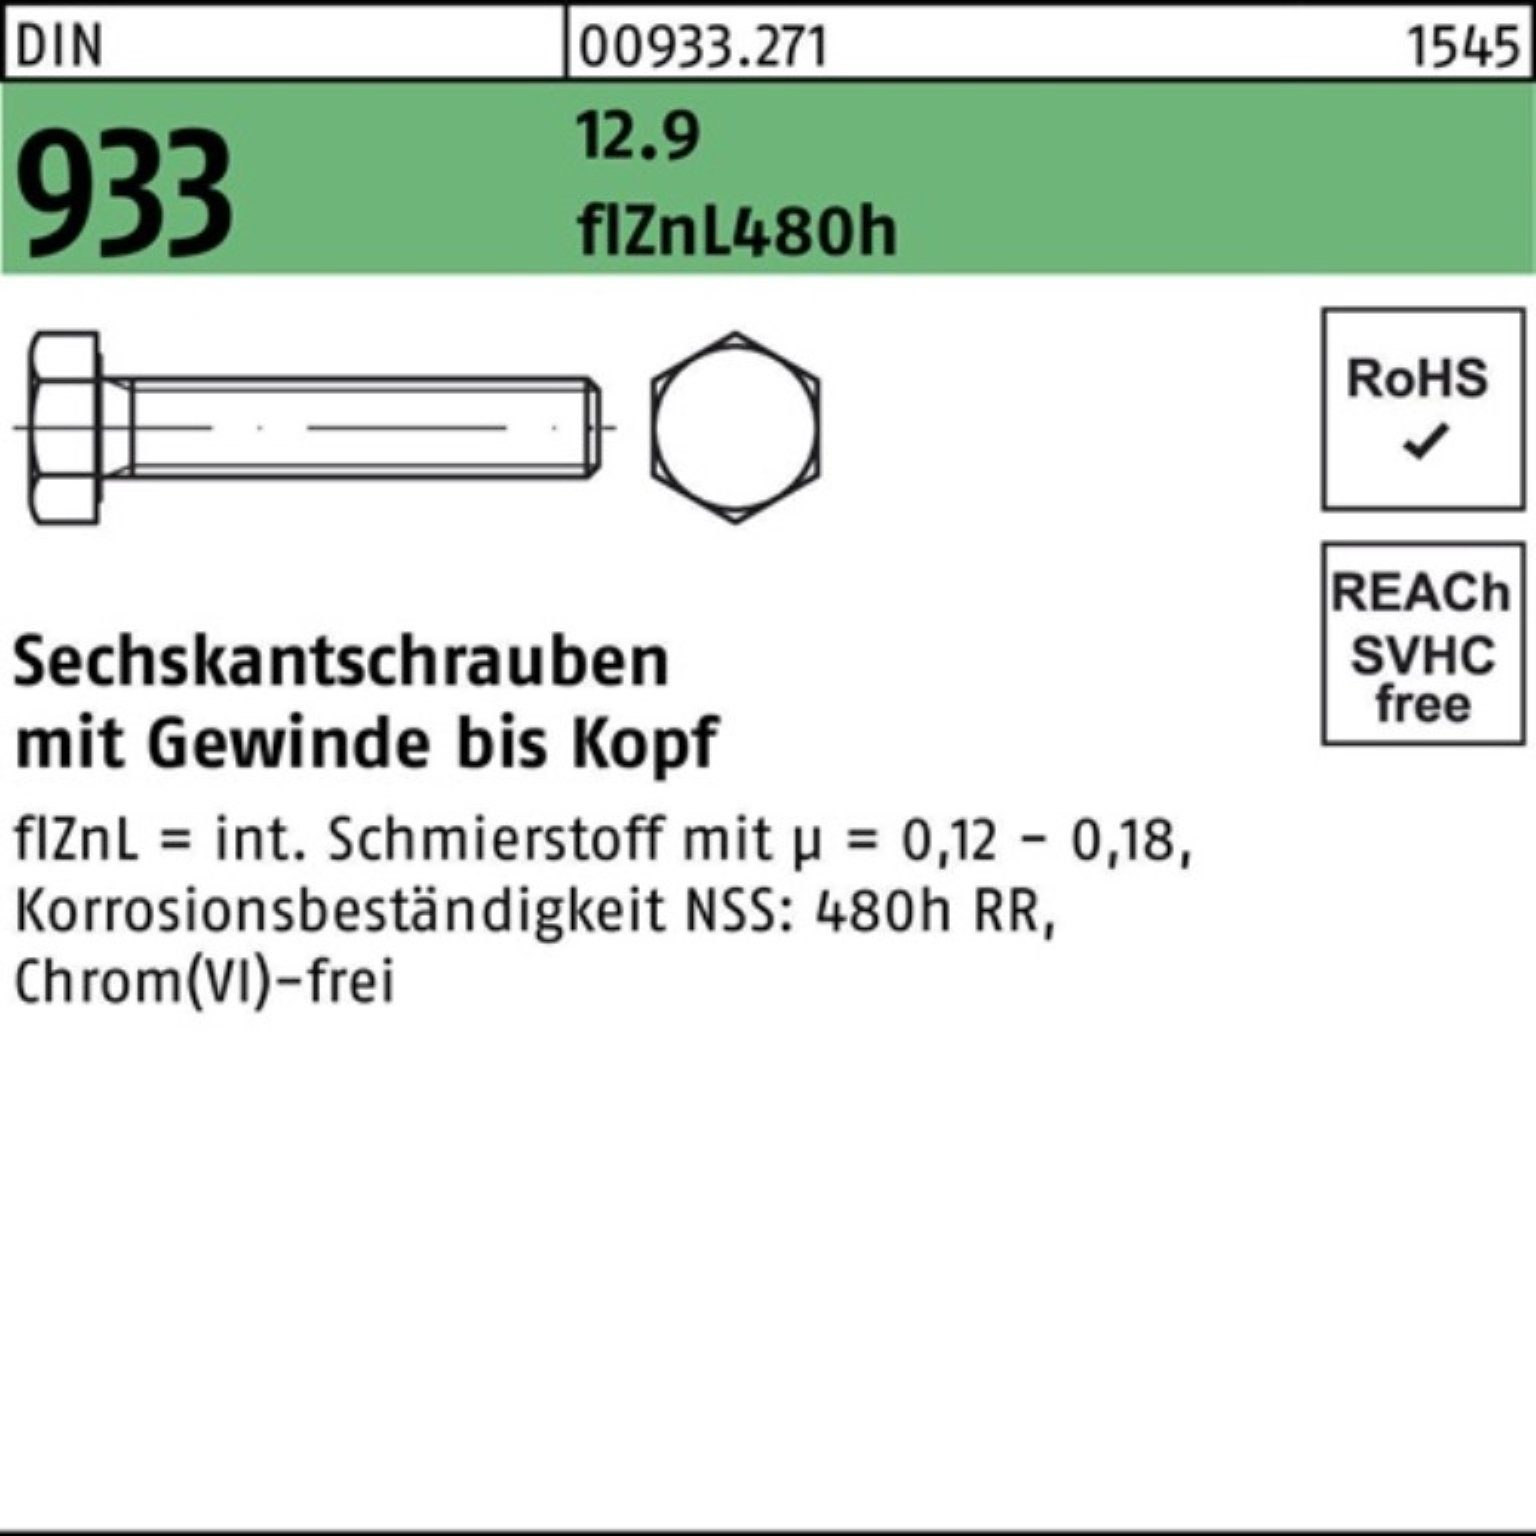 flZnL 480h Sechskantschraube Reyher M8x 12.9 30 200er Sechskantschraube 933 VG zinklam DIN Pack